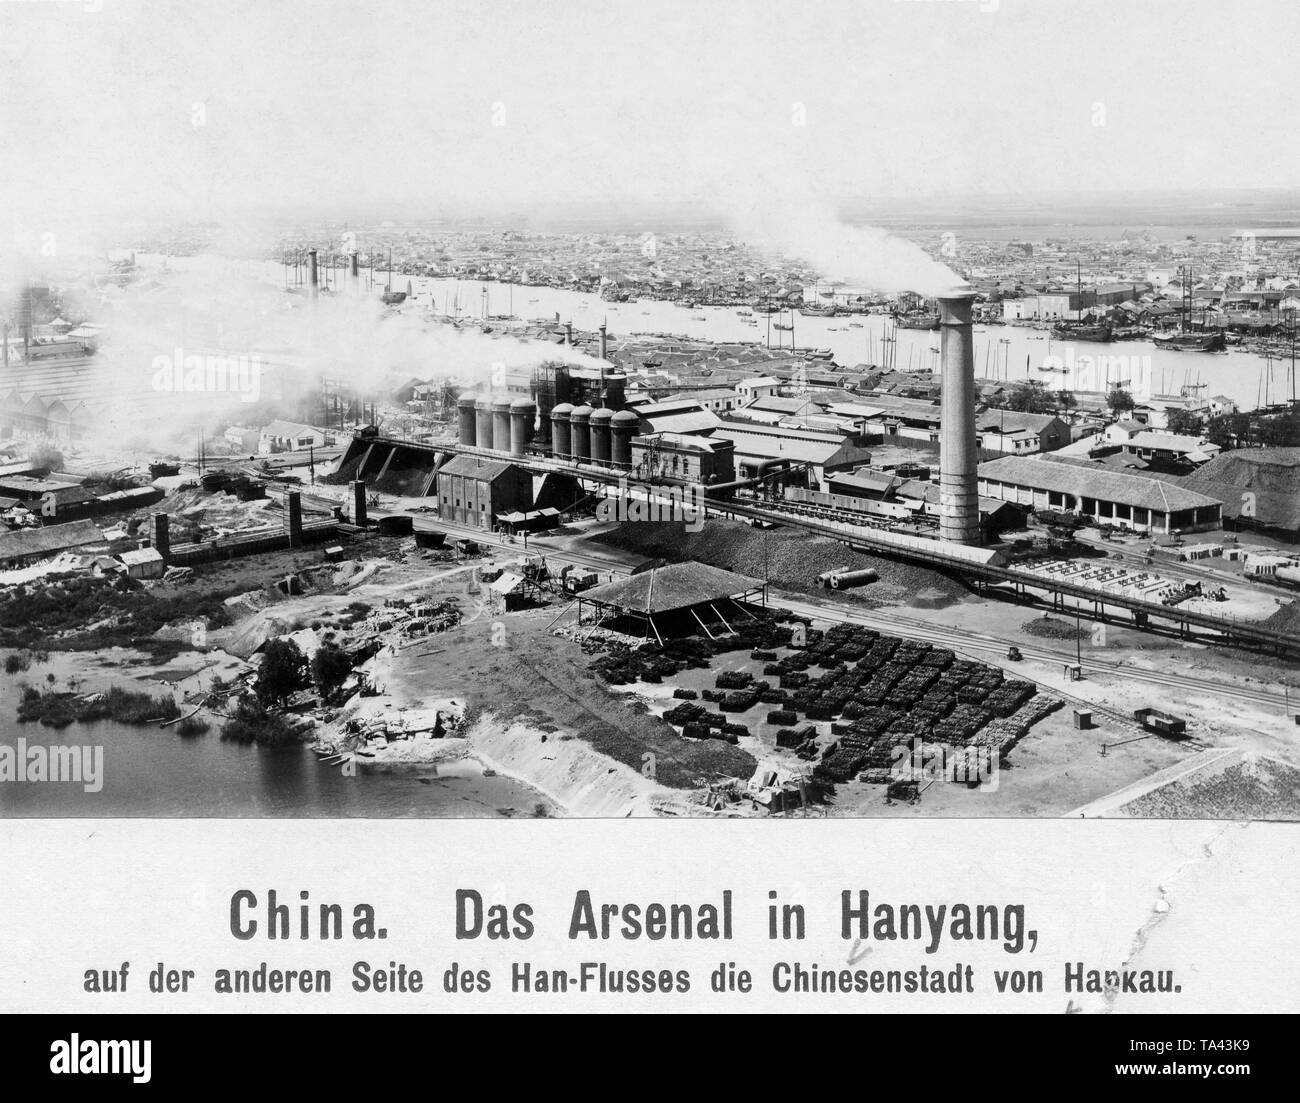 Arsenal in Hanyang at the Han River. Stock Photo